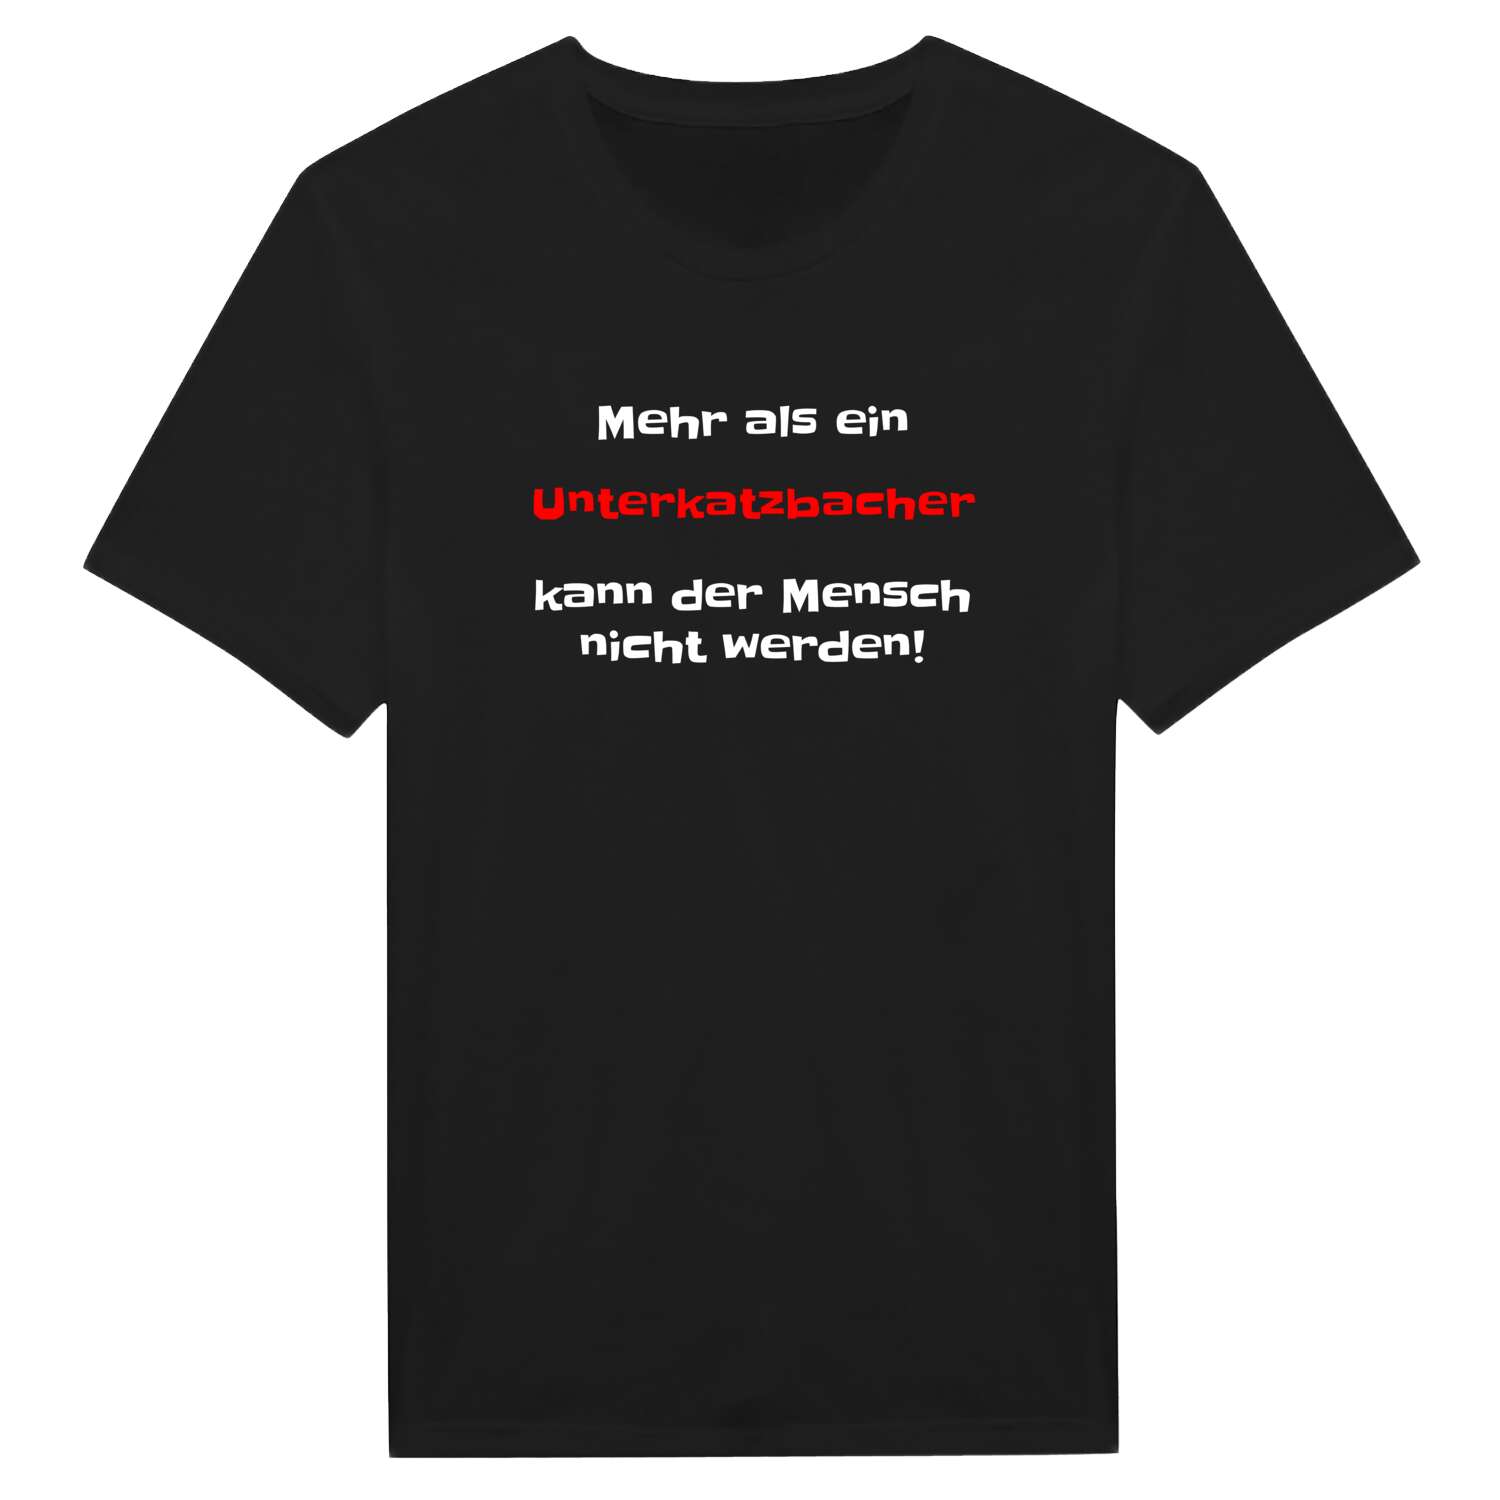 Unterkatzbach T-Shirt »Mehr als ein«